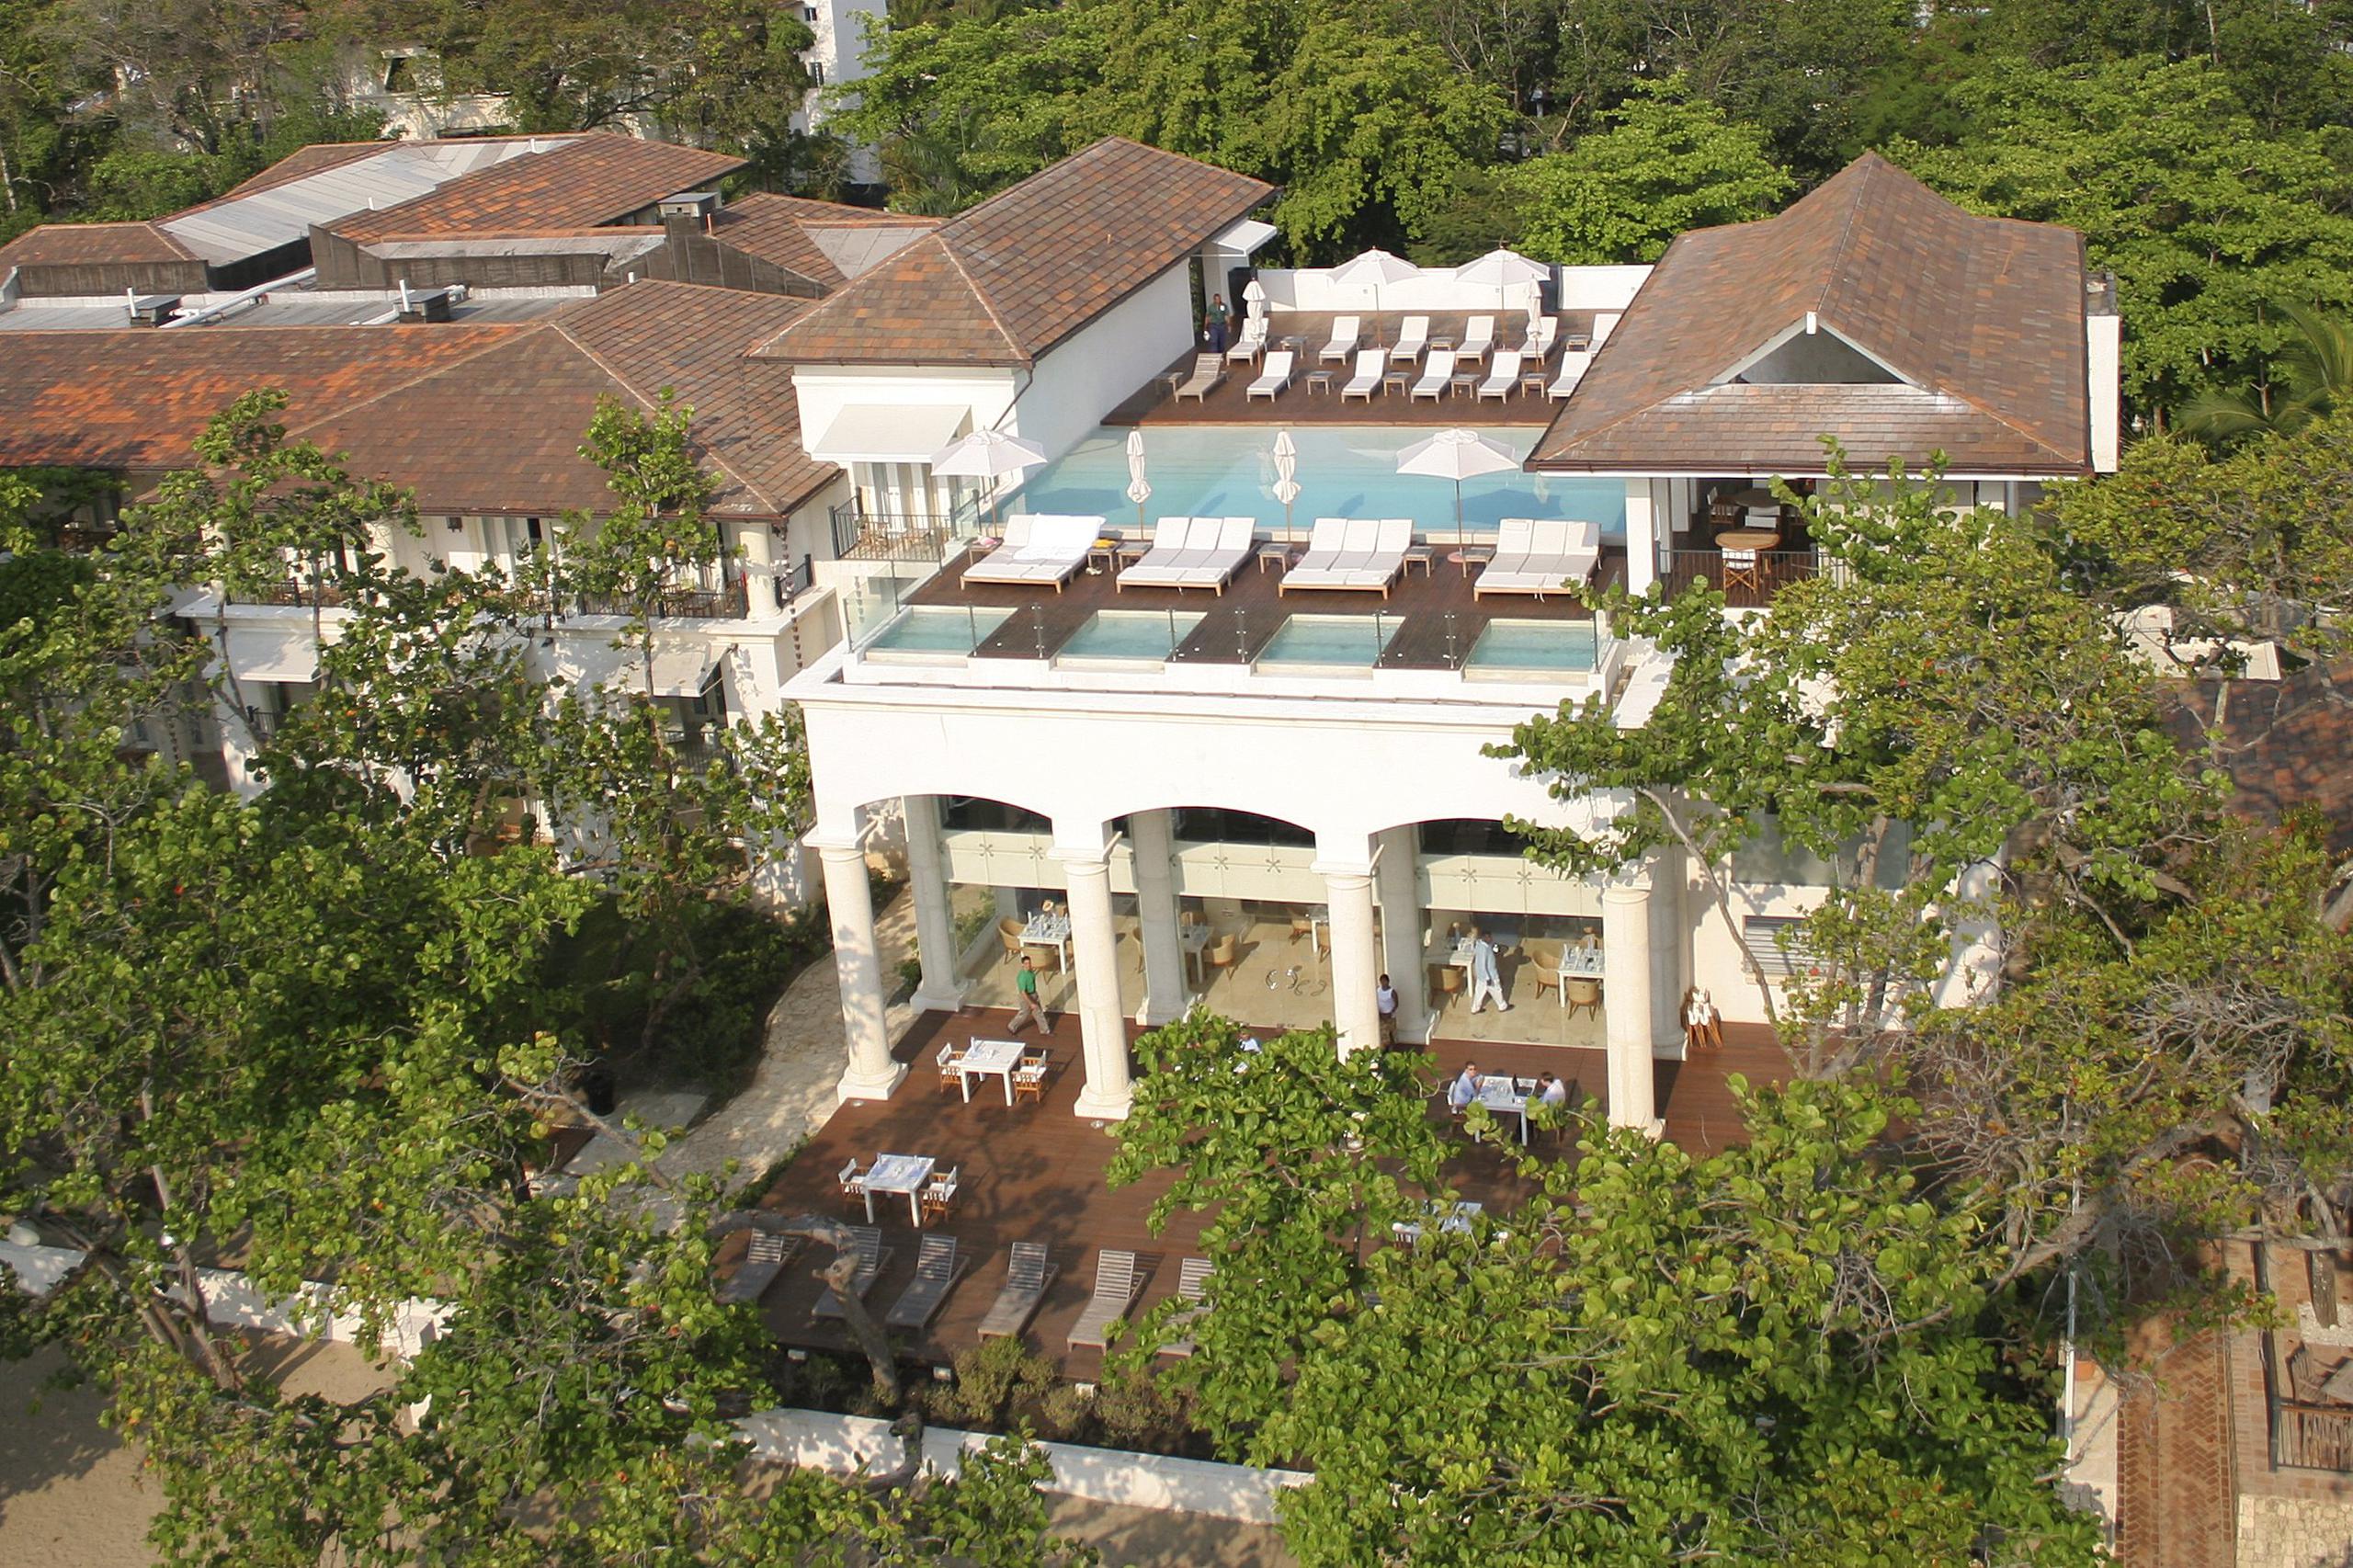 Inspirado en un estilo arquitectónico colonial, este hotel tiene múltiples amenidades como su piscina "roof top".